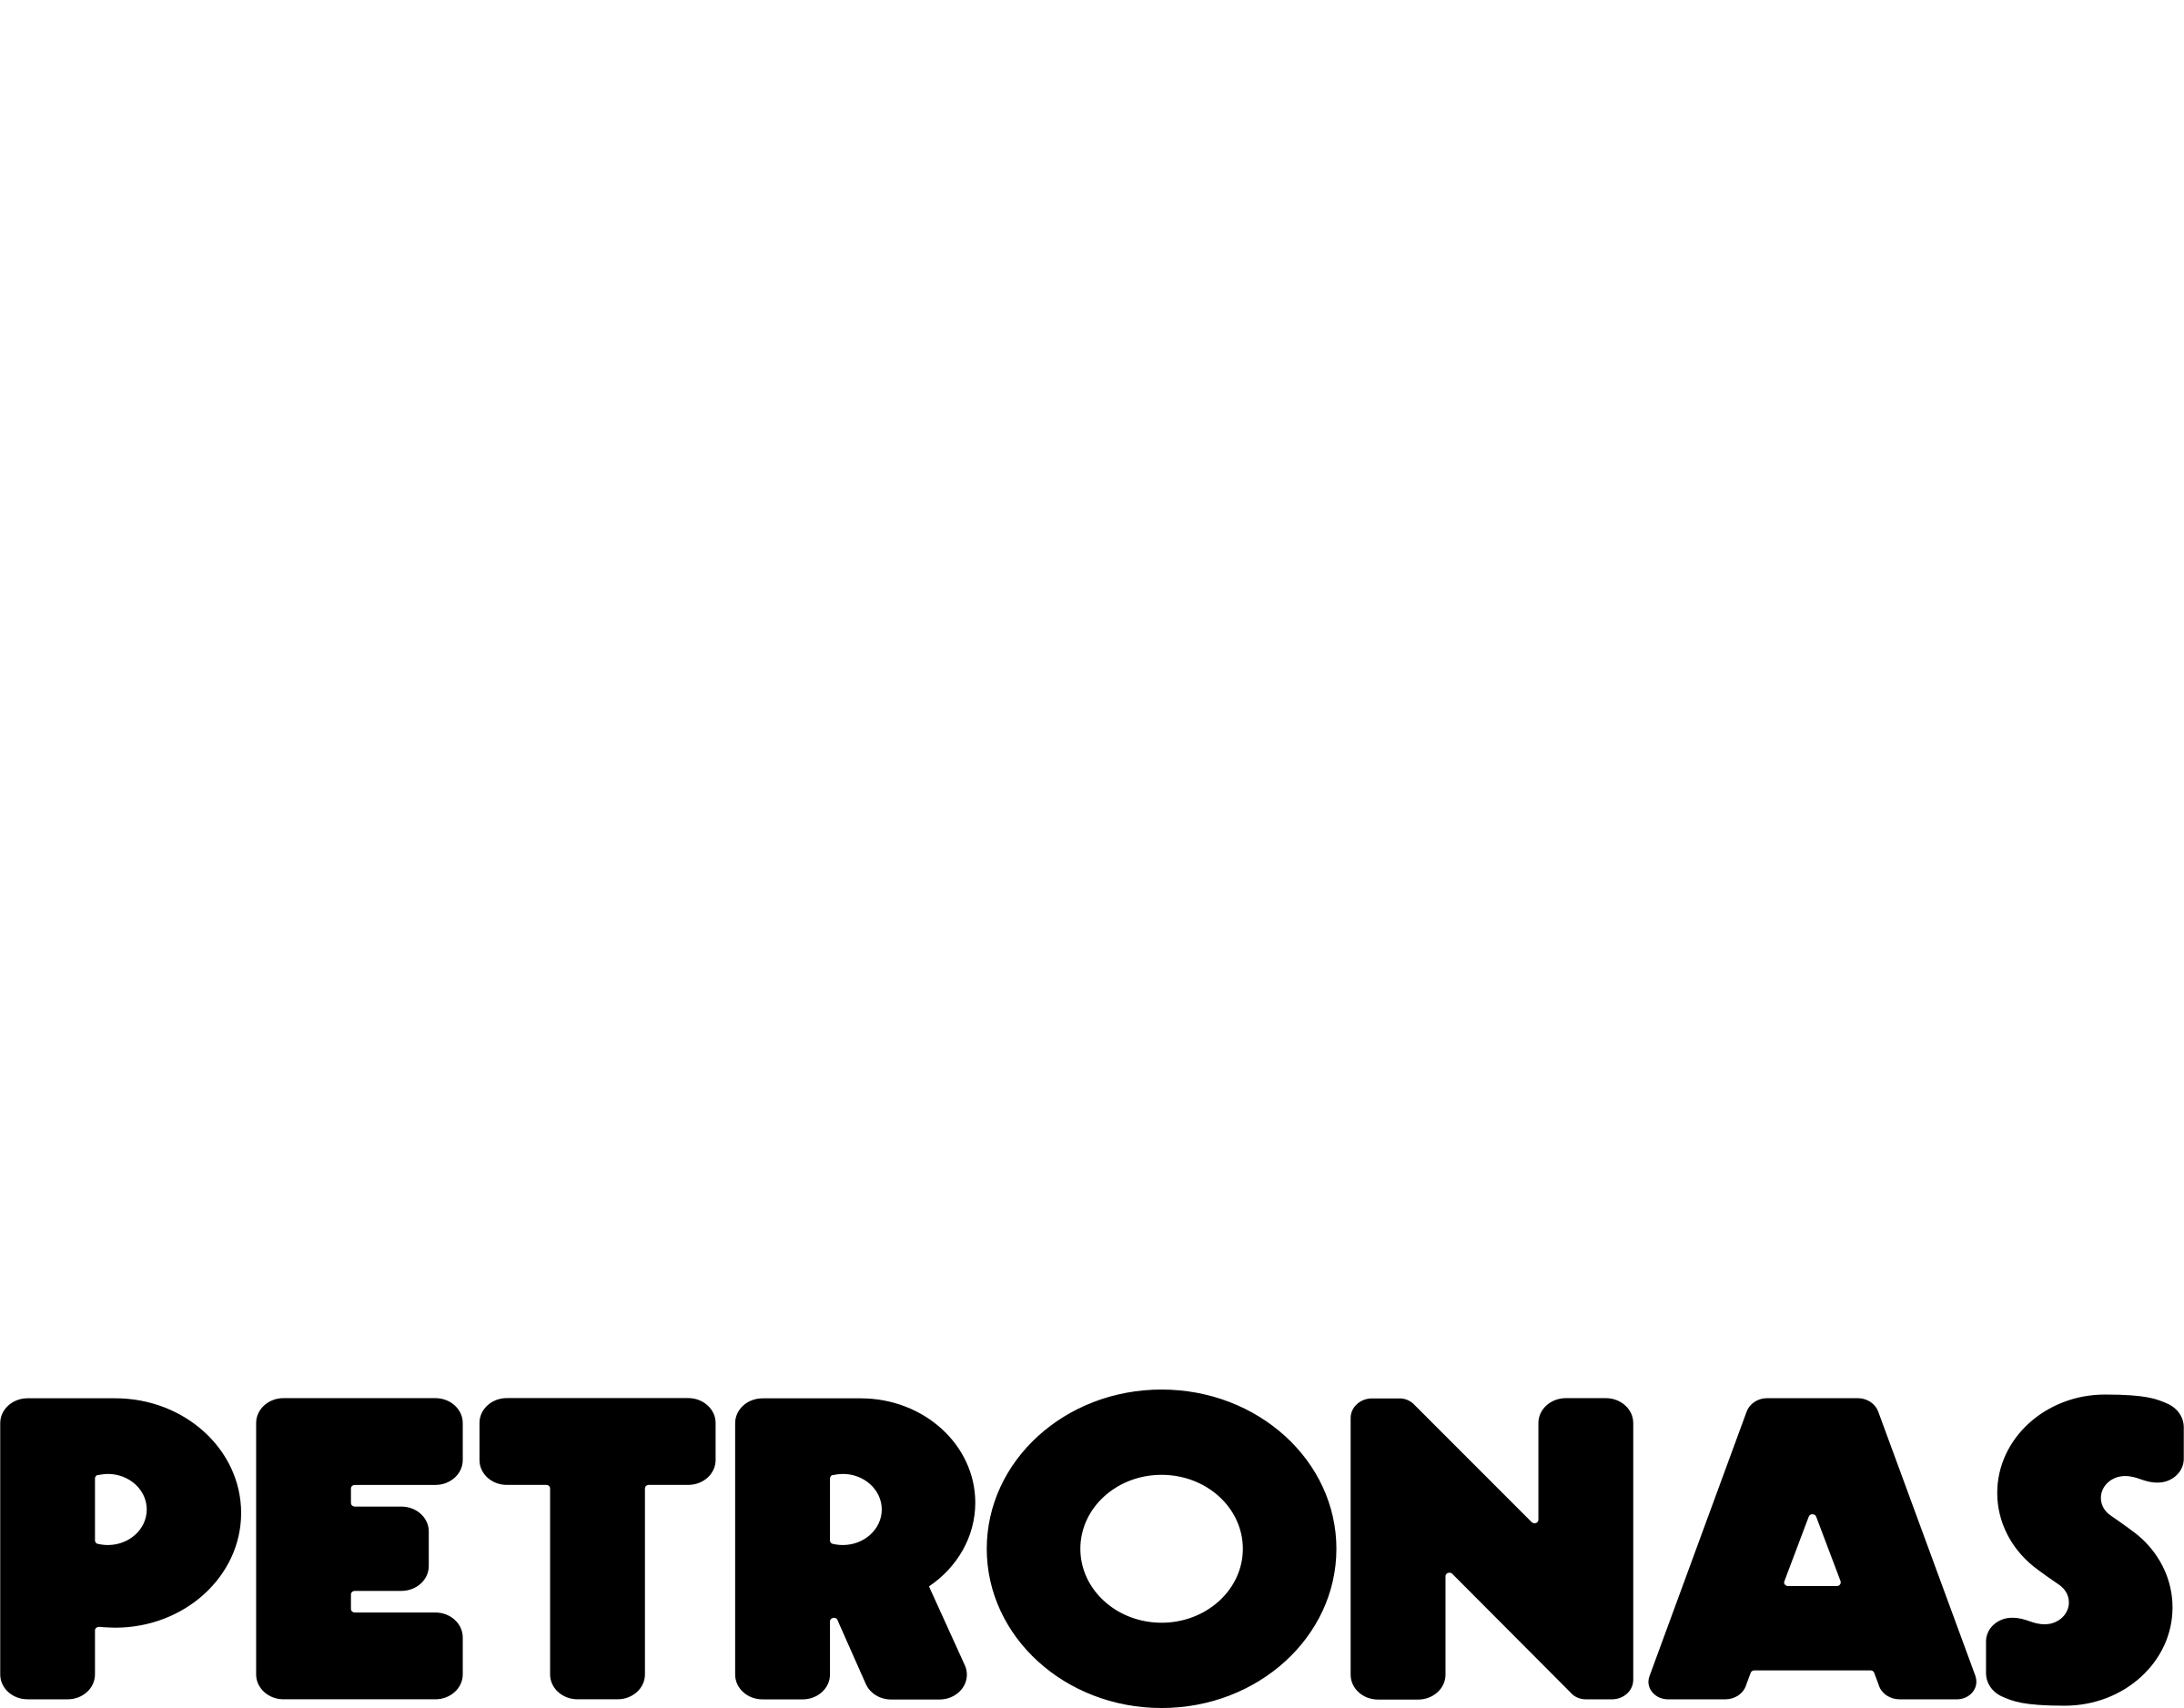 Petronas Logo - Petronas Logo PNG Transparent & SVG Vector - Freebie Supply